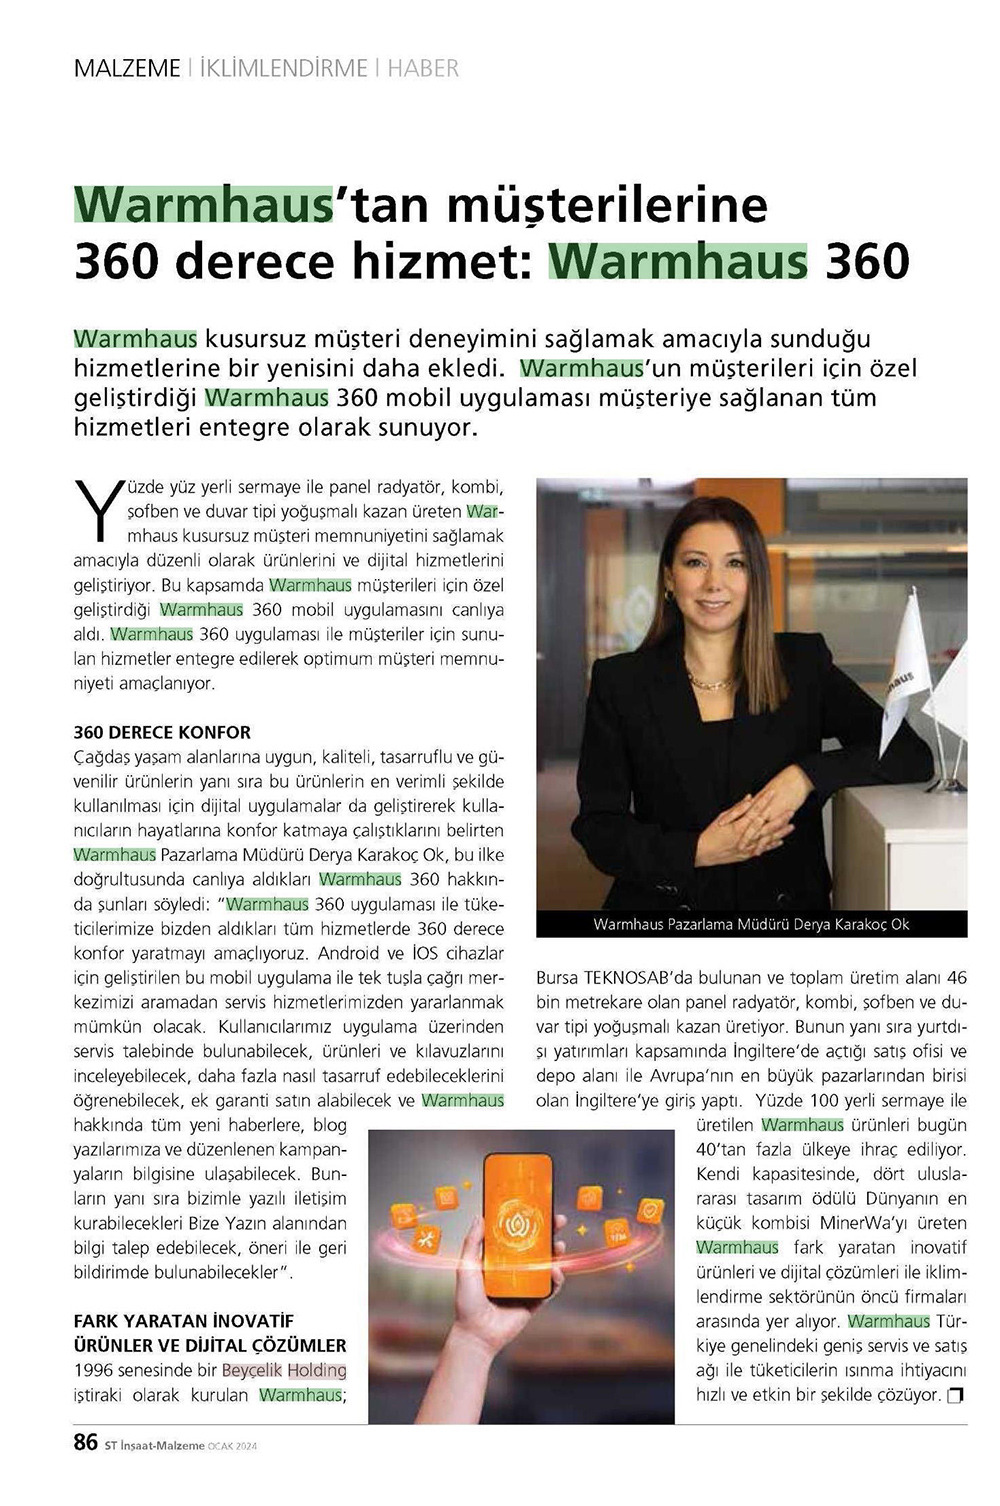 Warmhaus'tan müşterilerine 360 derece hizmet: Warnhaus 360